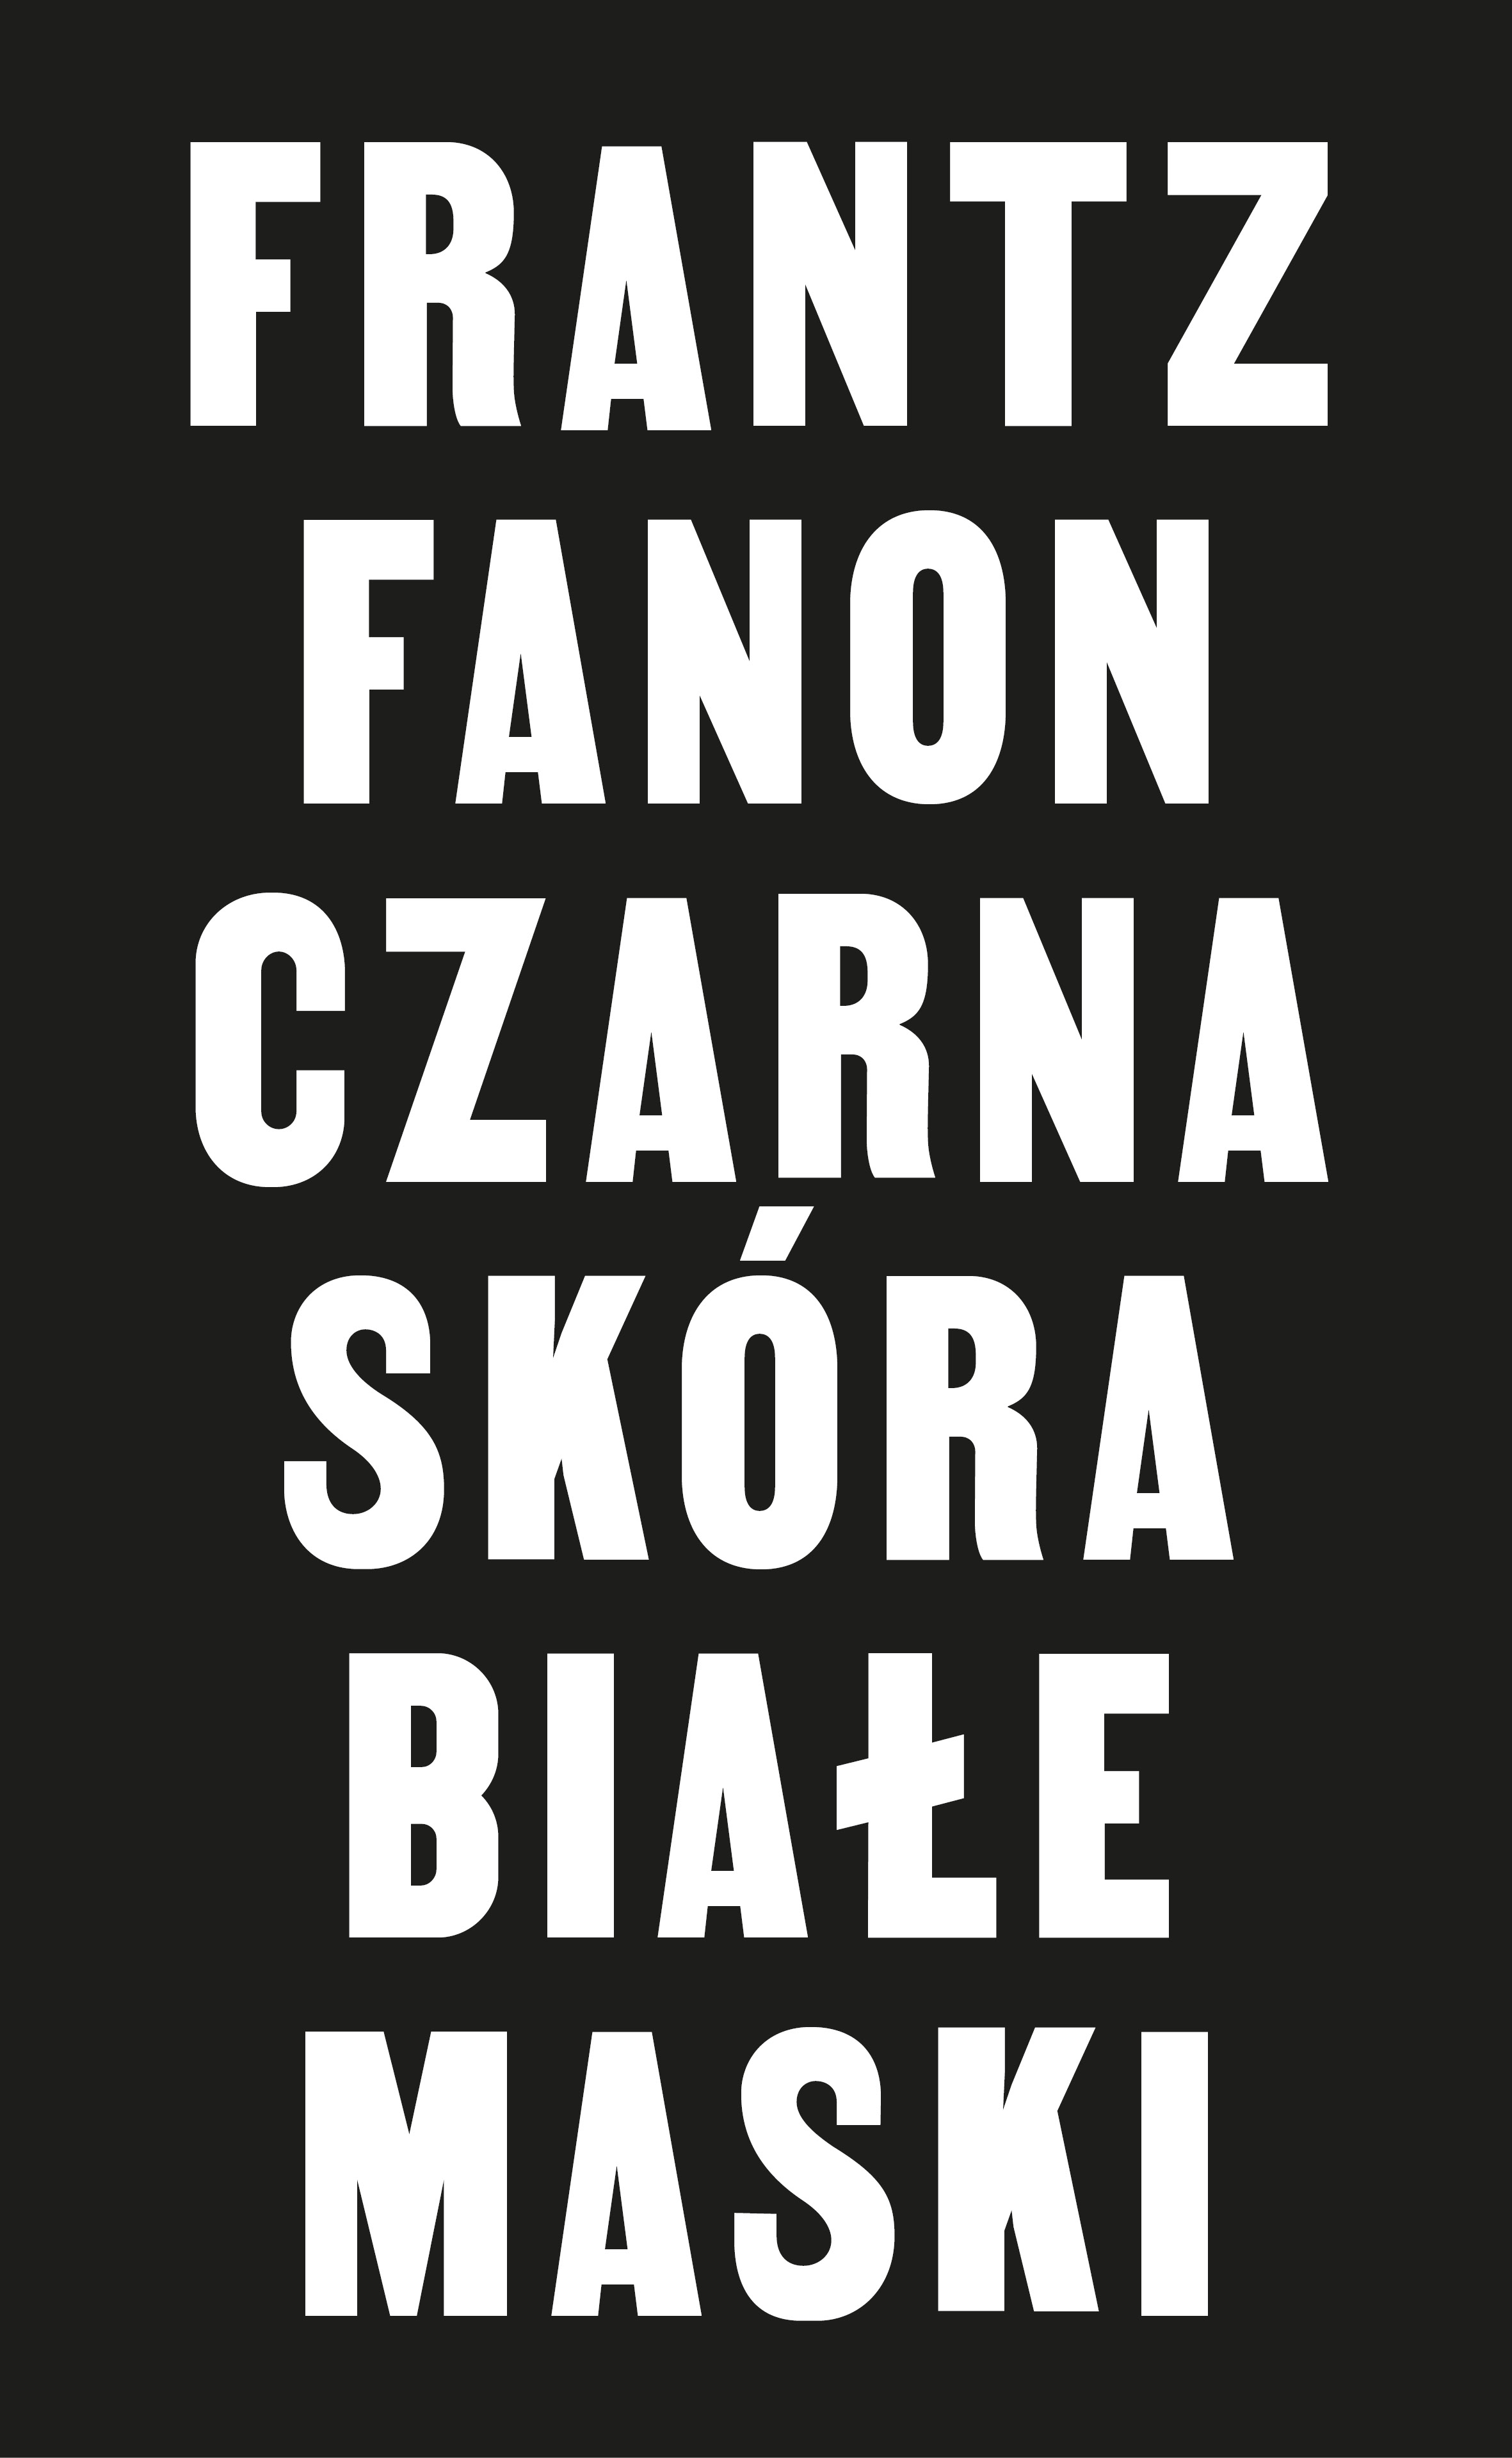 Peau noire, masques blancs - Frantz Fanon